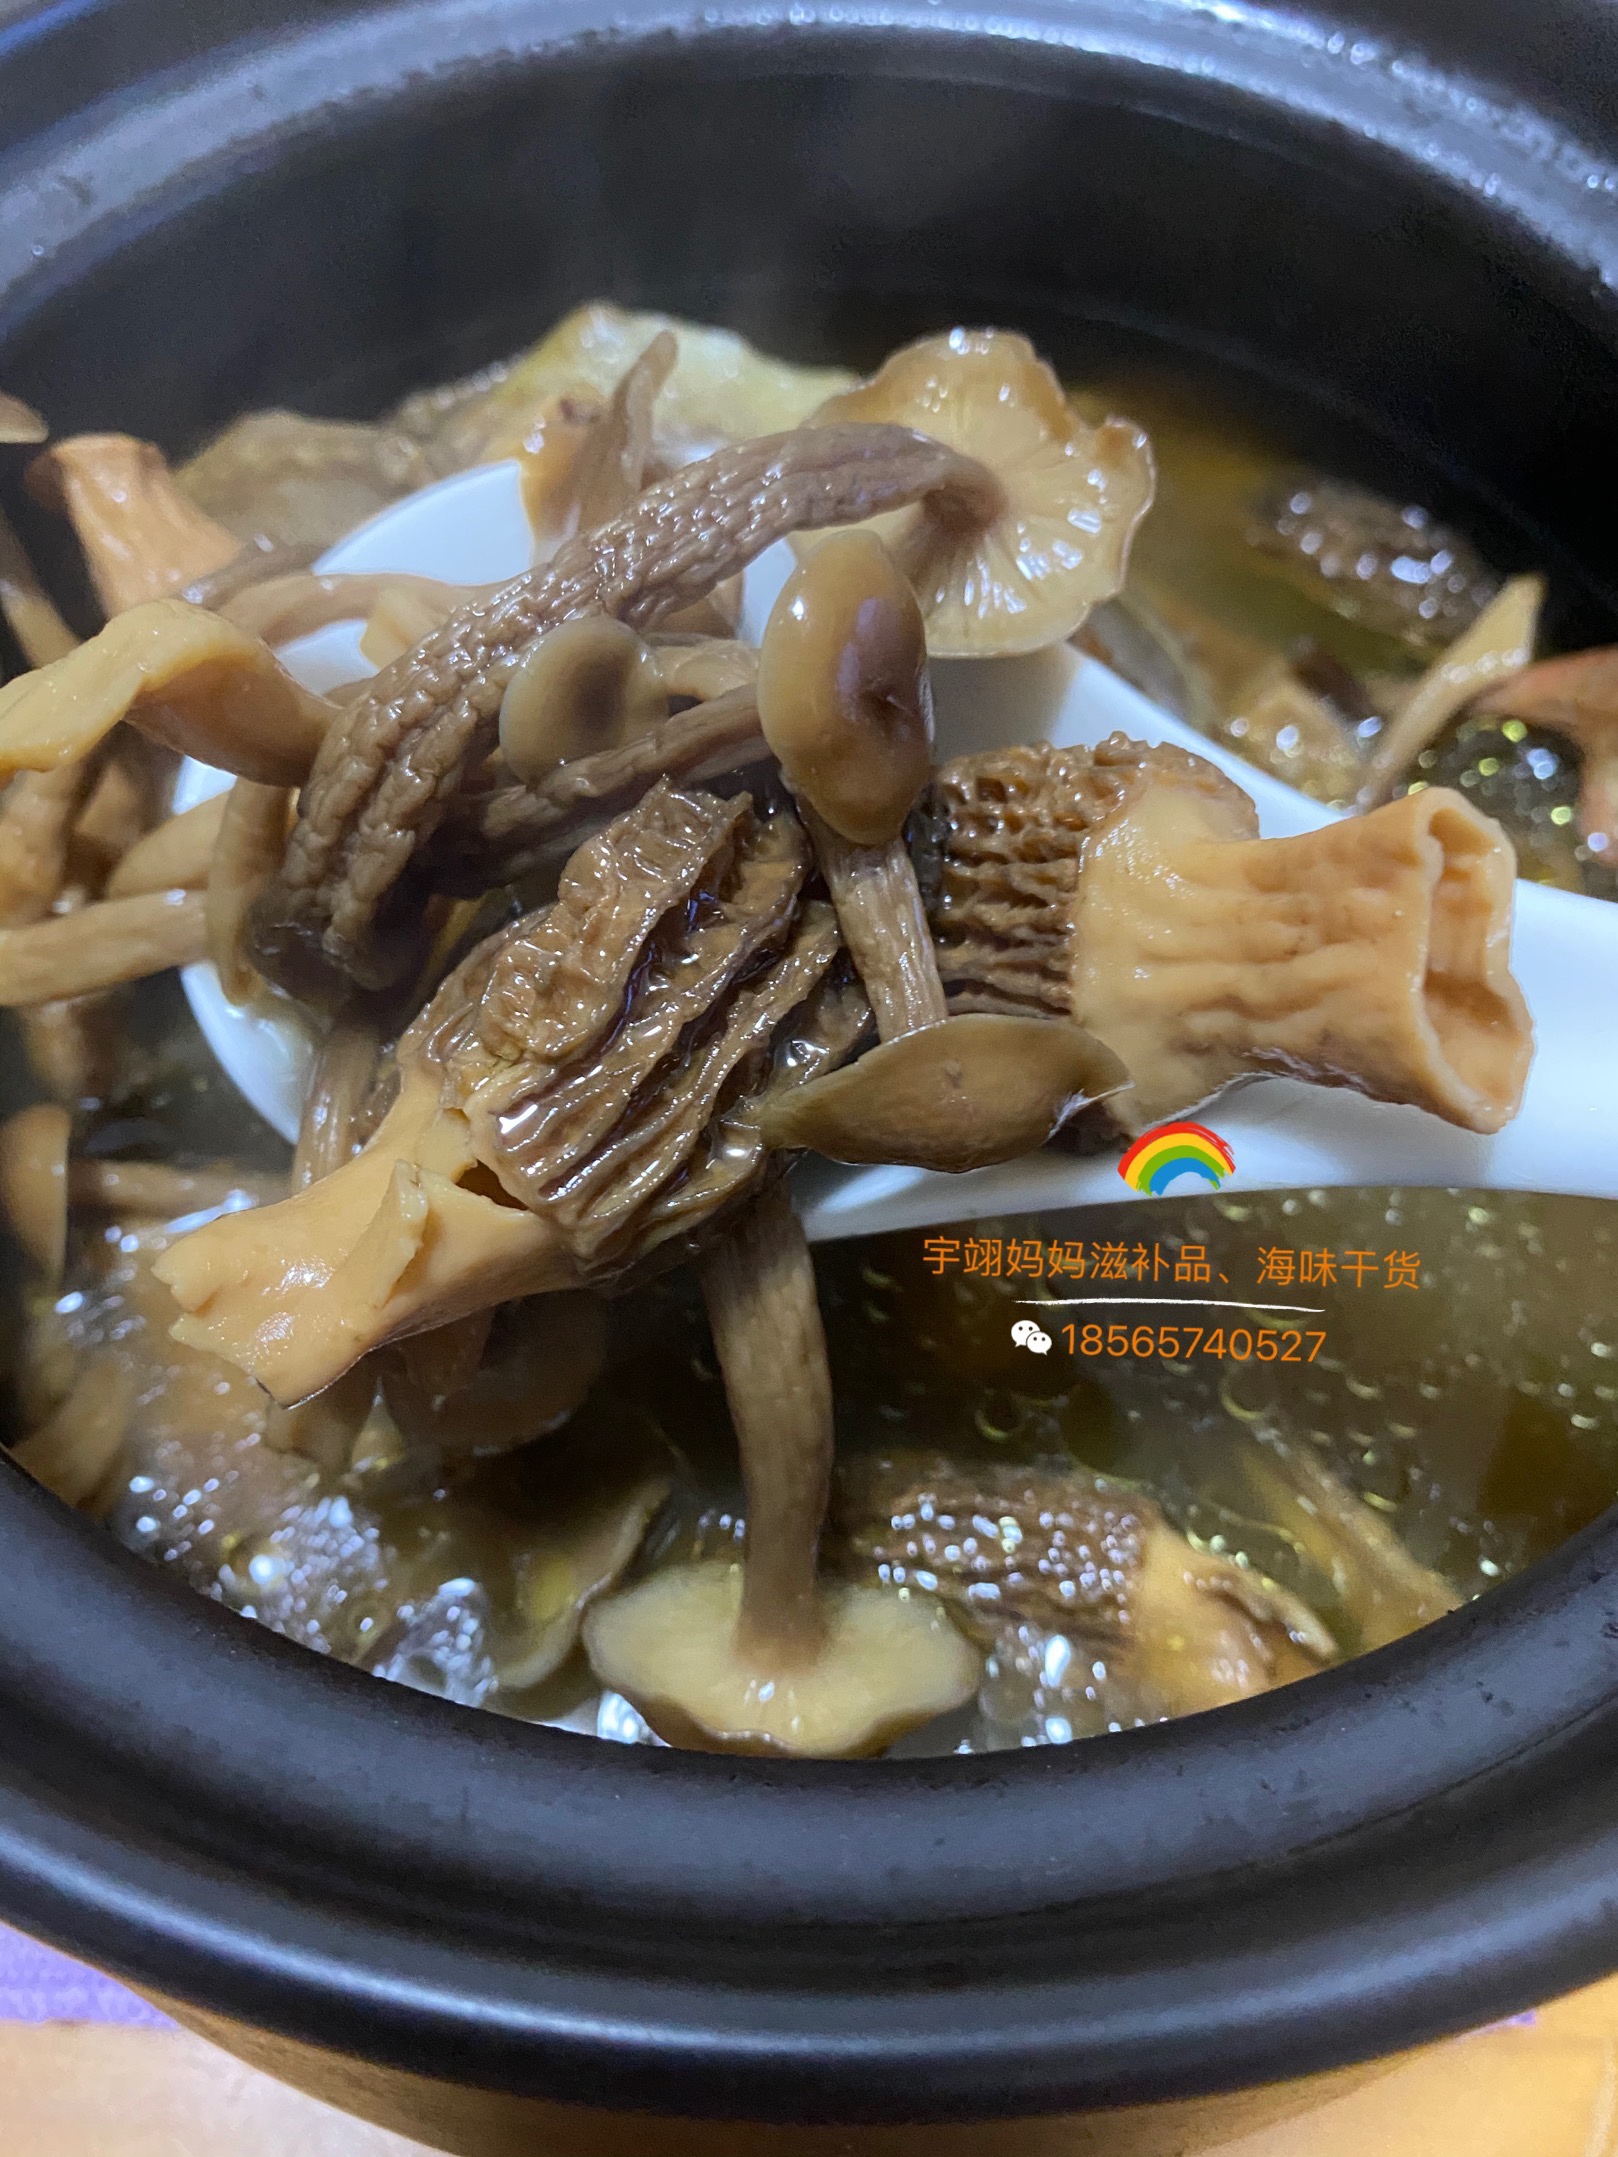 羊肚菌鹿茸菇煲鸽子汤，煲出来的汤水不需要加任何调料都非常鲜美好喝